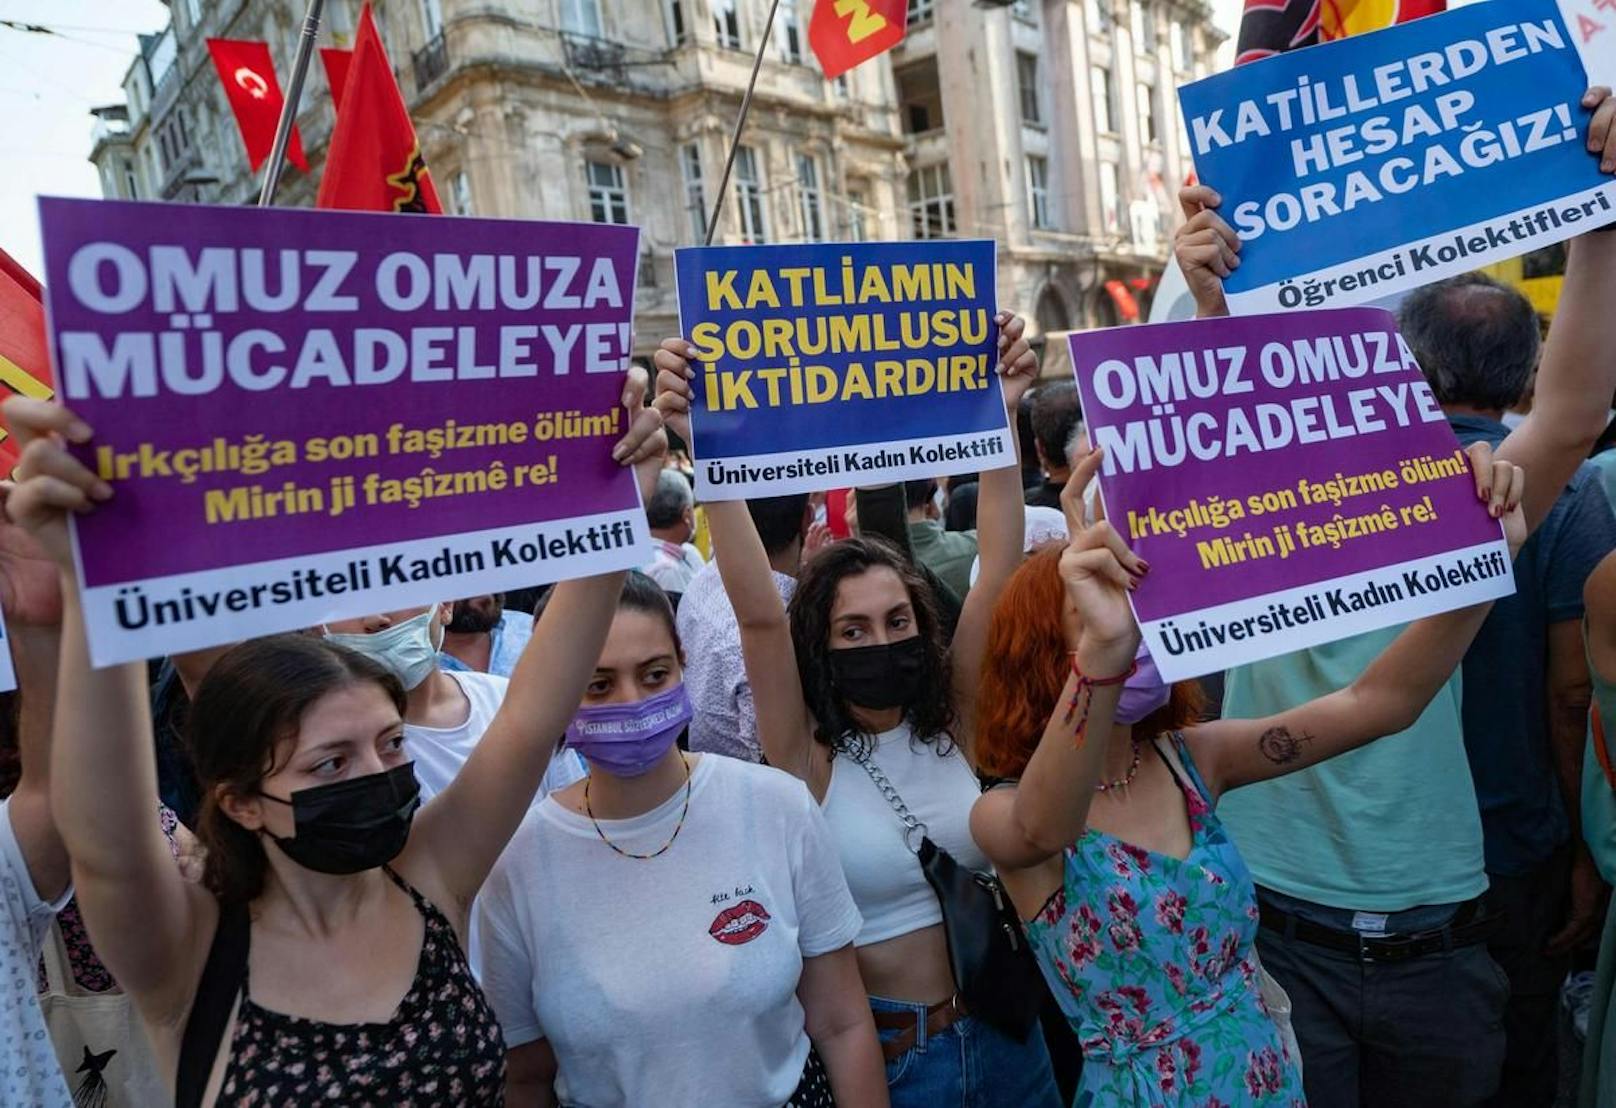 Am Samstag fand in Istanbul eine Solidaritäts-Kundgebung statt.